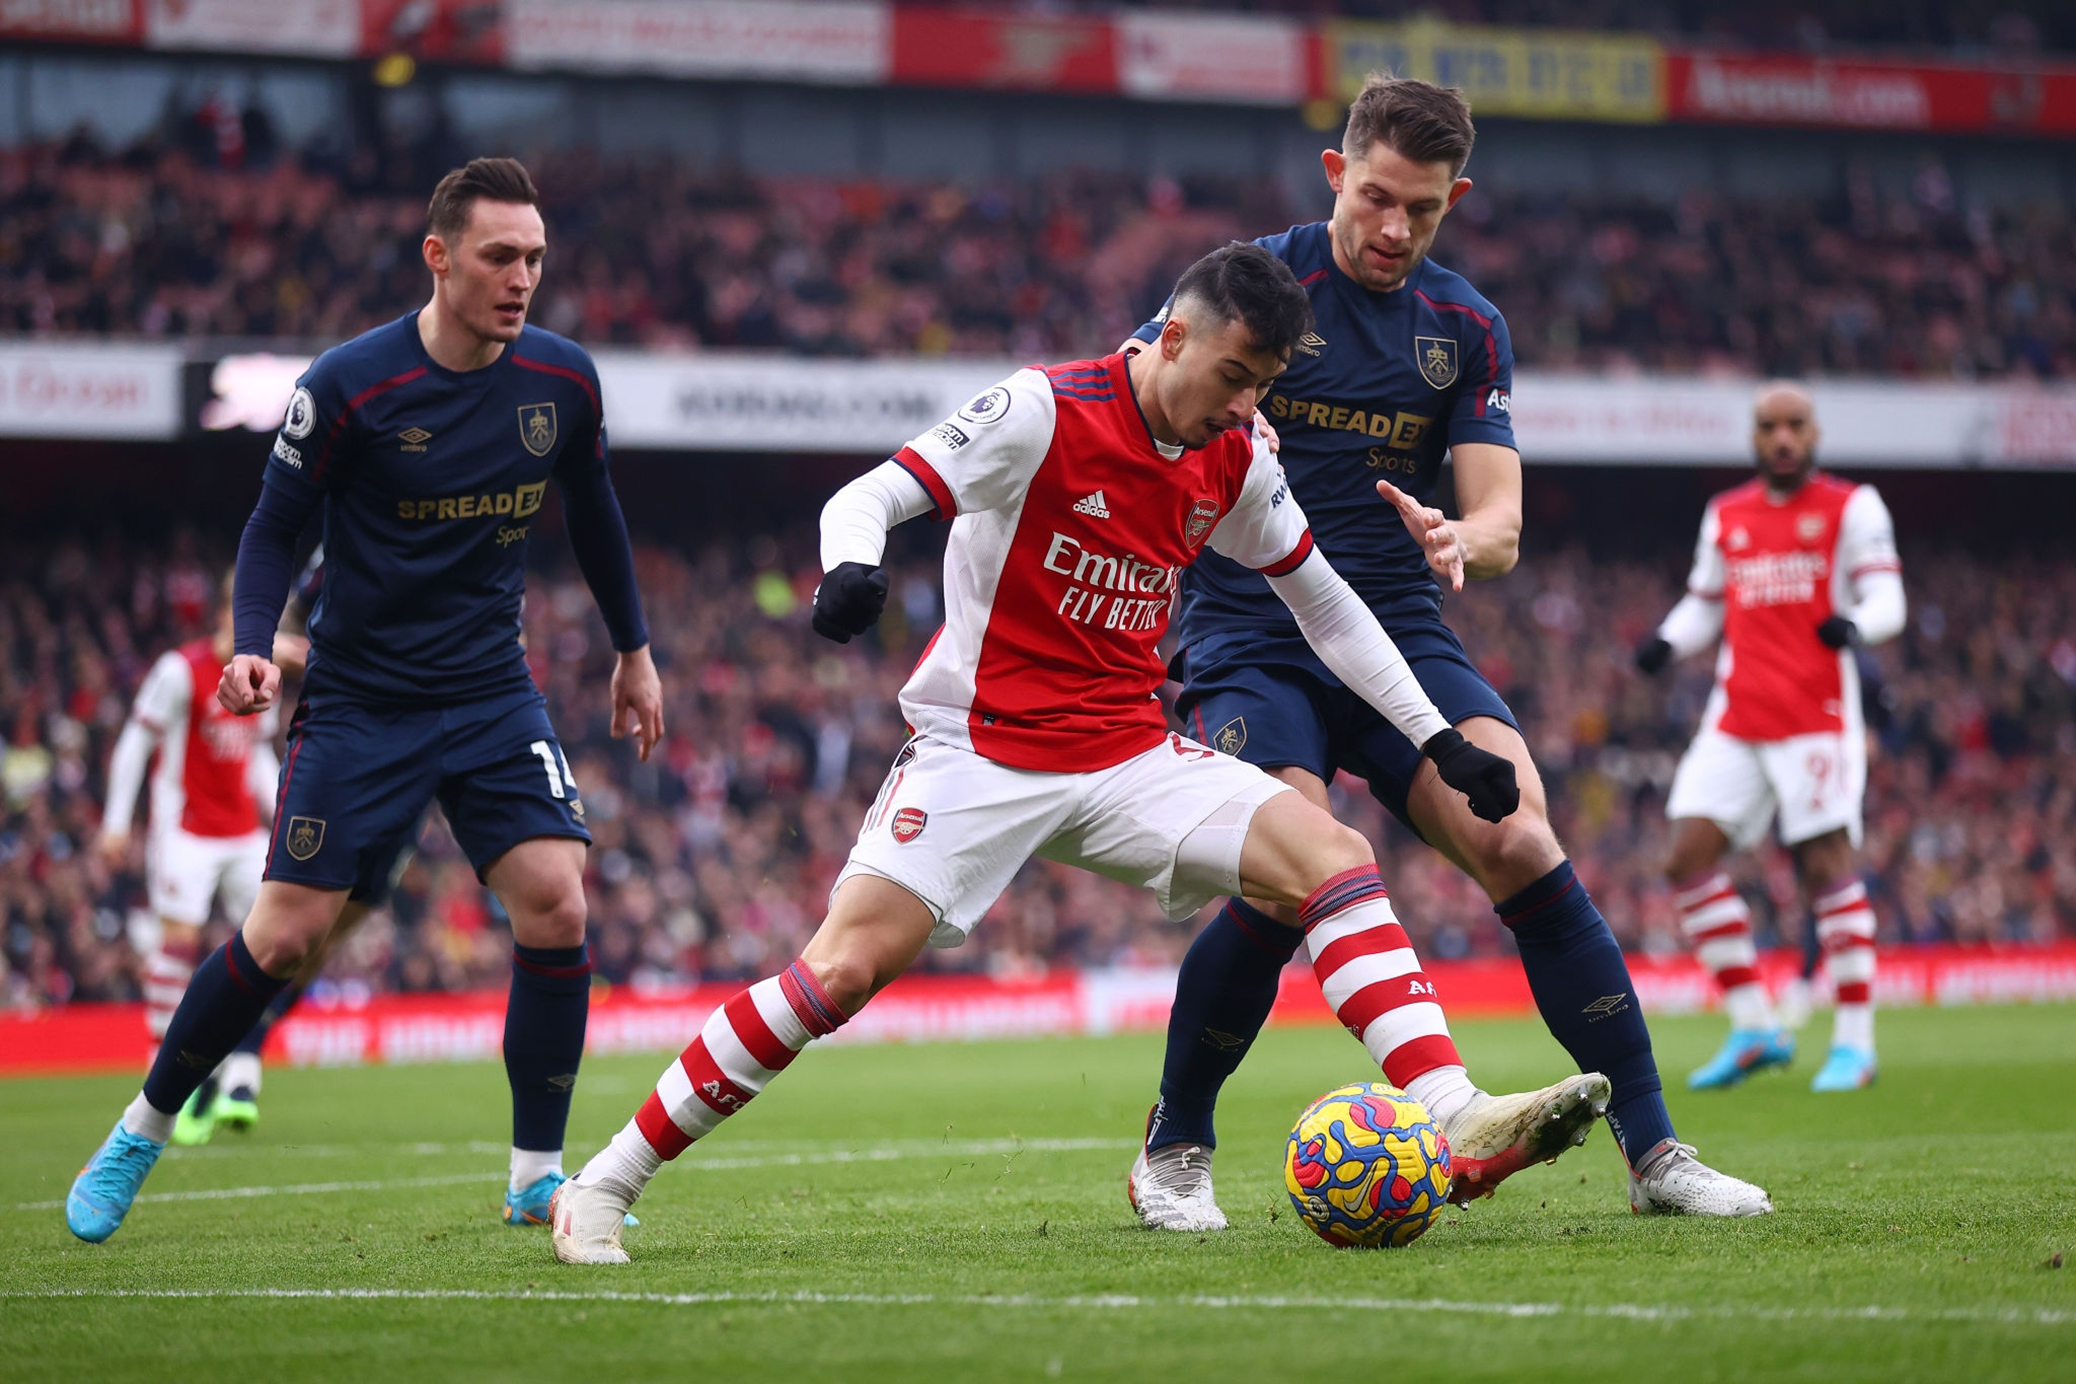 A Day at Arsenal (Part 2): Arsenal vs Burnley